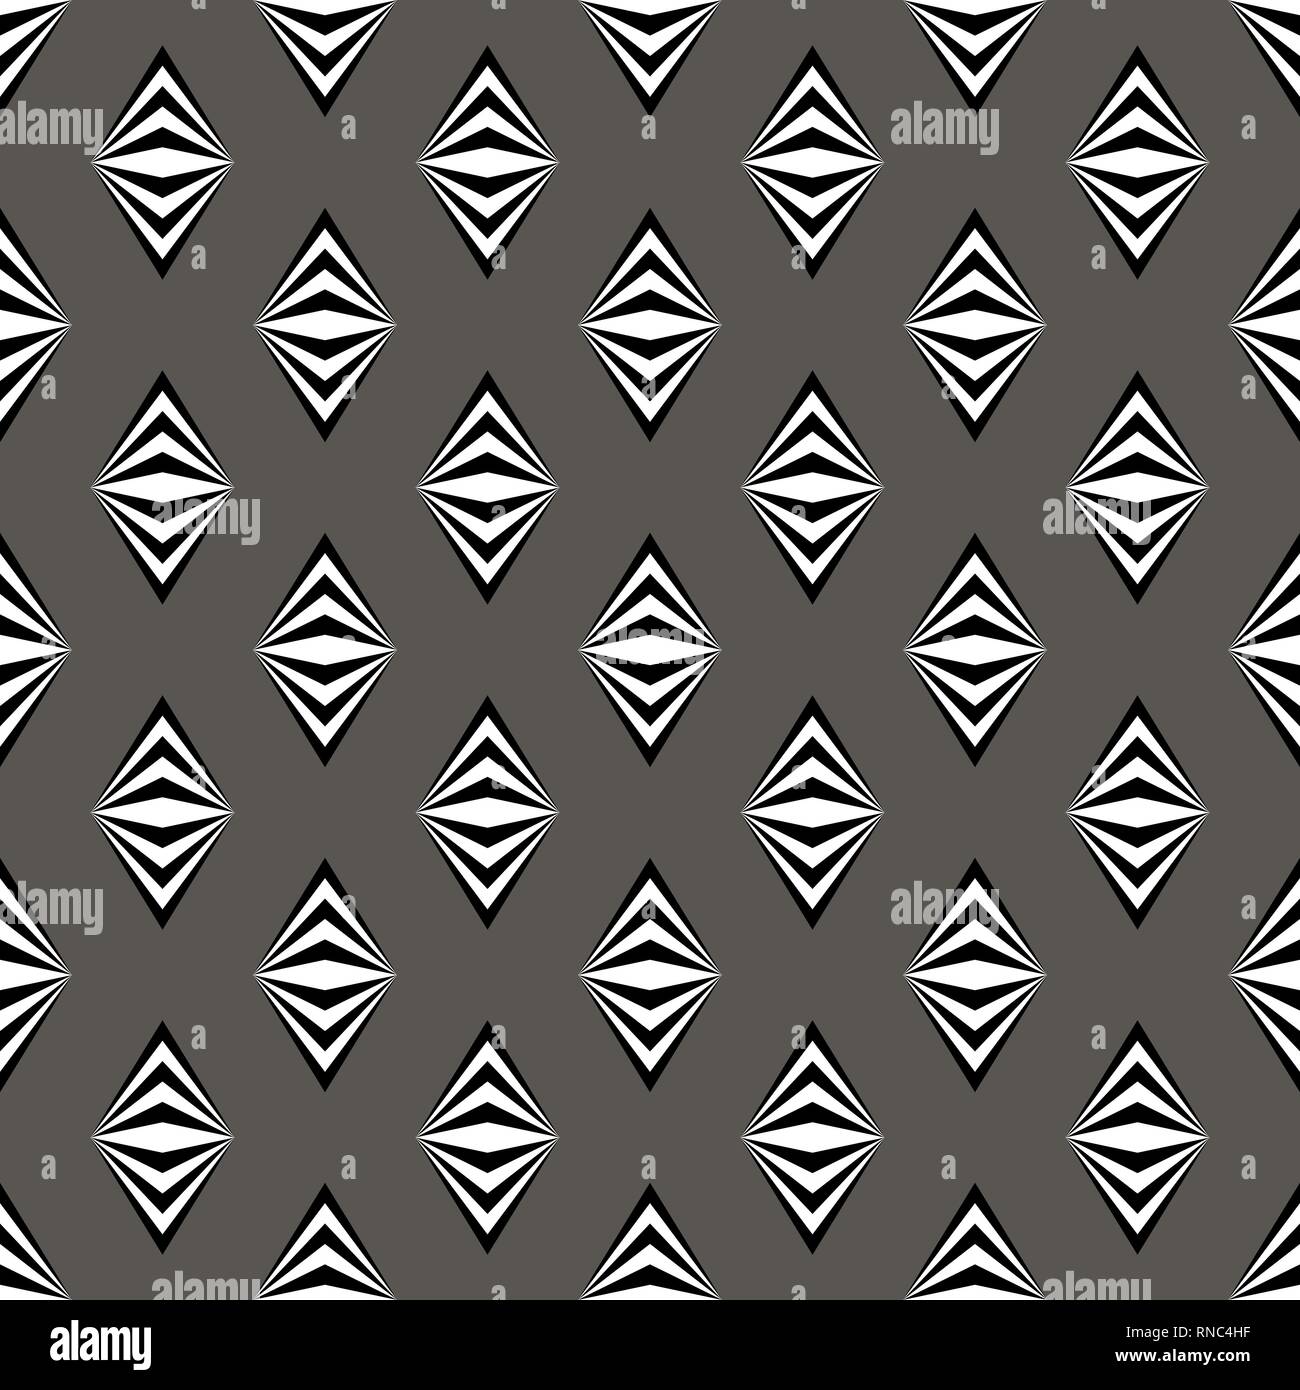 Einfache schwarz weiß grau Muster Hintergrund mit rombs Stock Vektor